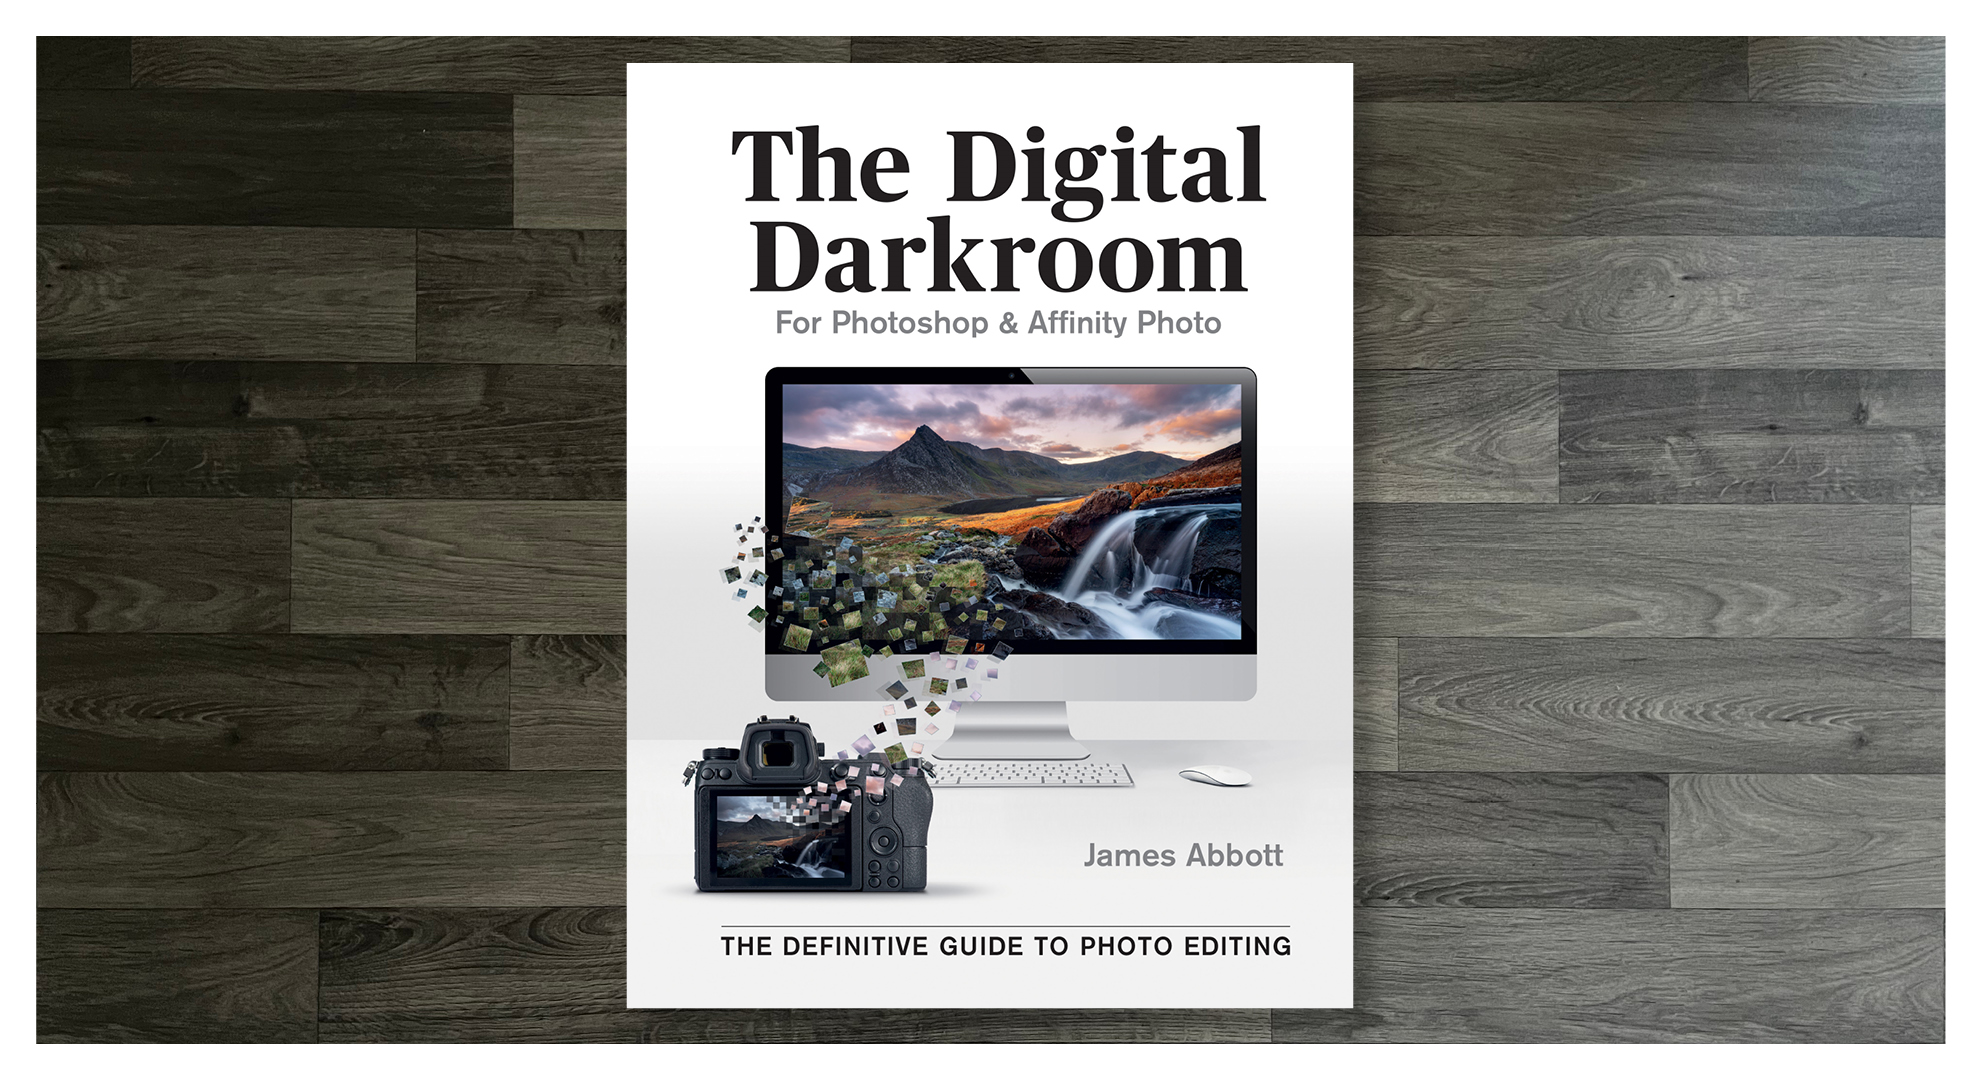 Best photo books 2021 digital darkroom james abbott image